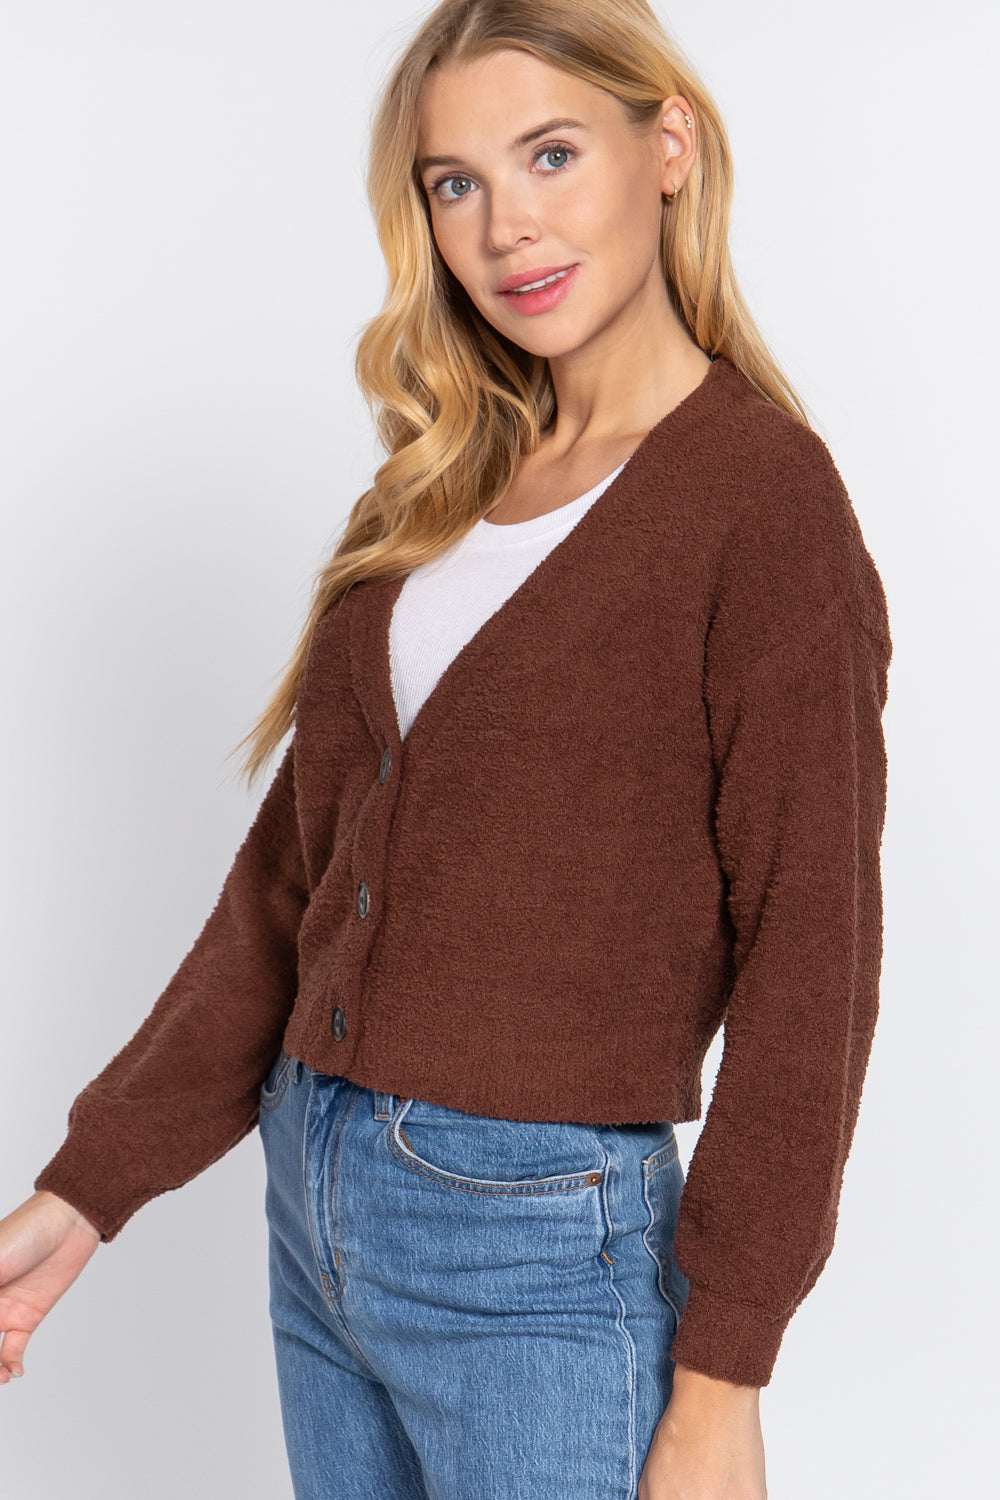 Women's Long Slv V-neck Sweater Cardigan